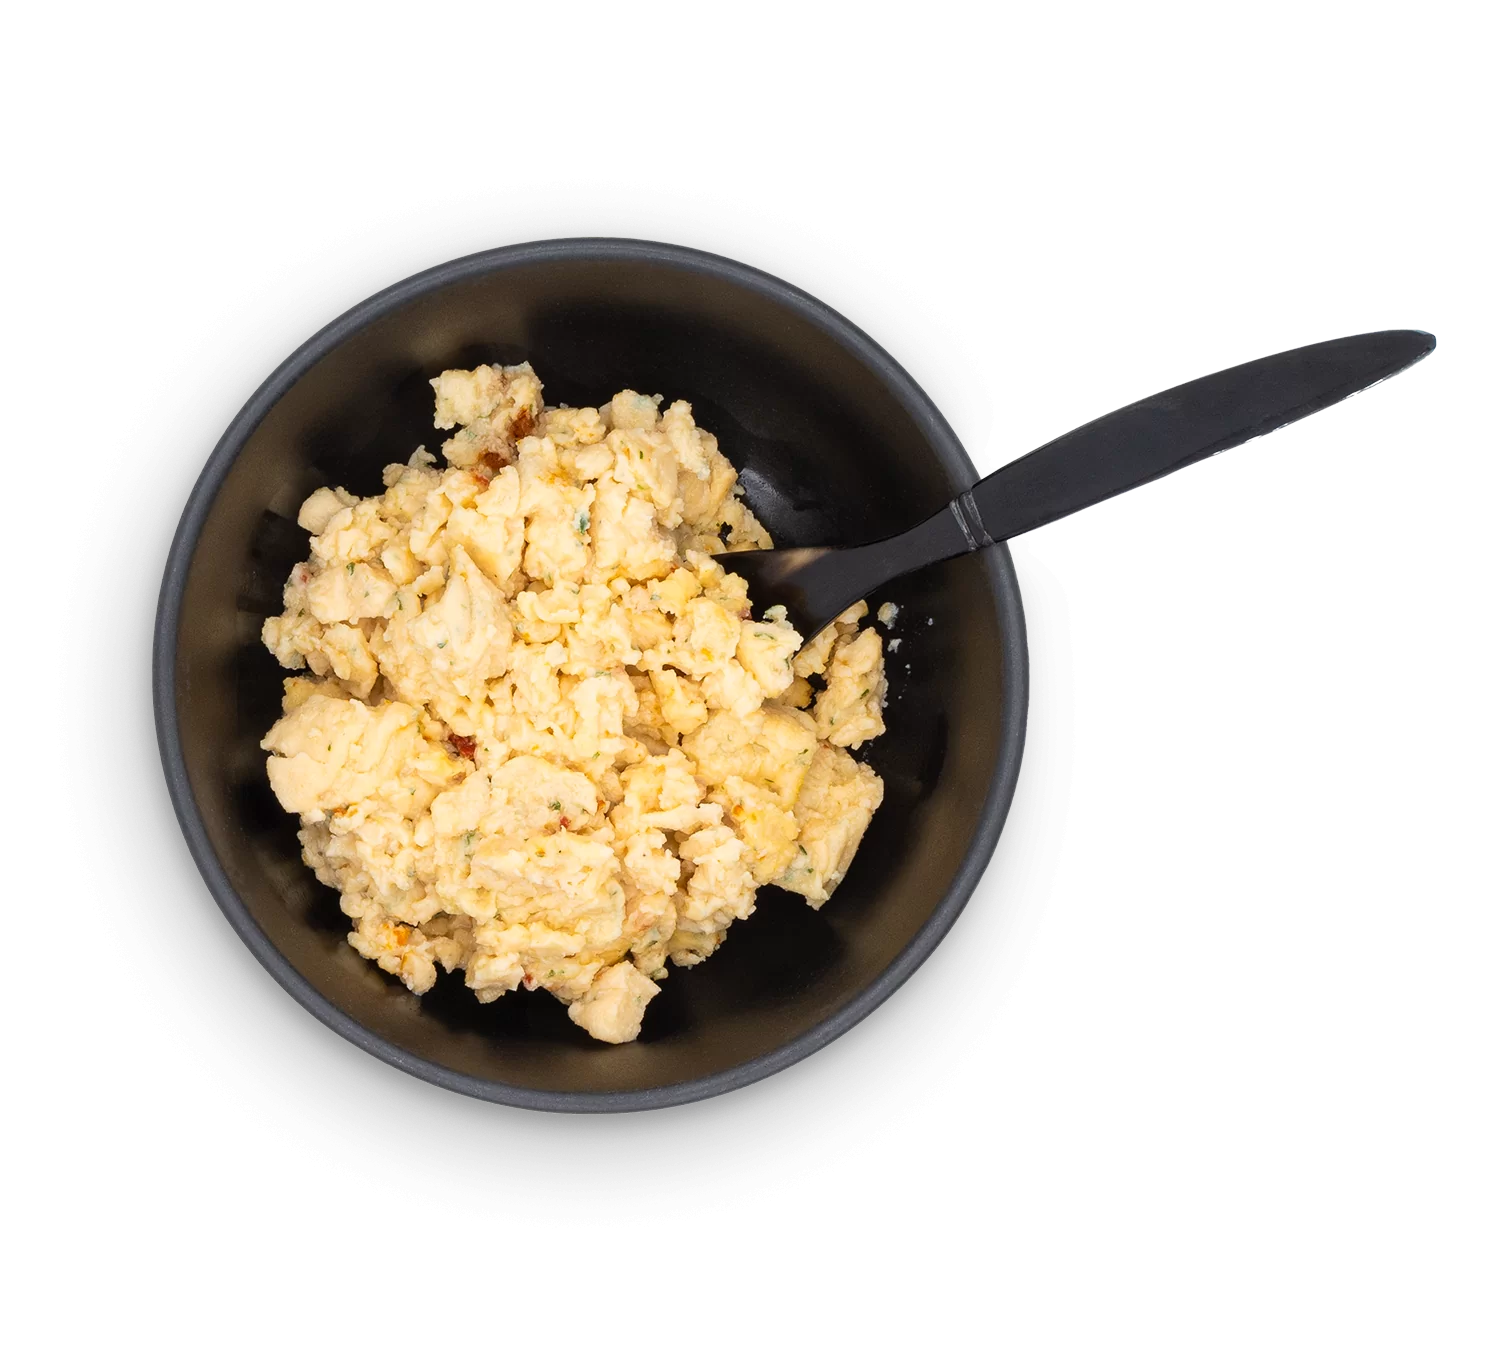 Scrambled eggs in a bowl